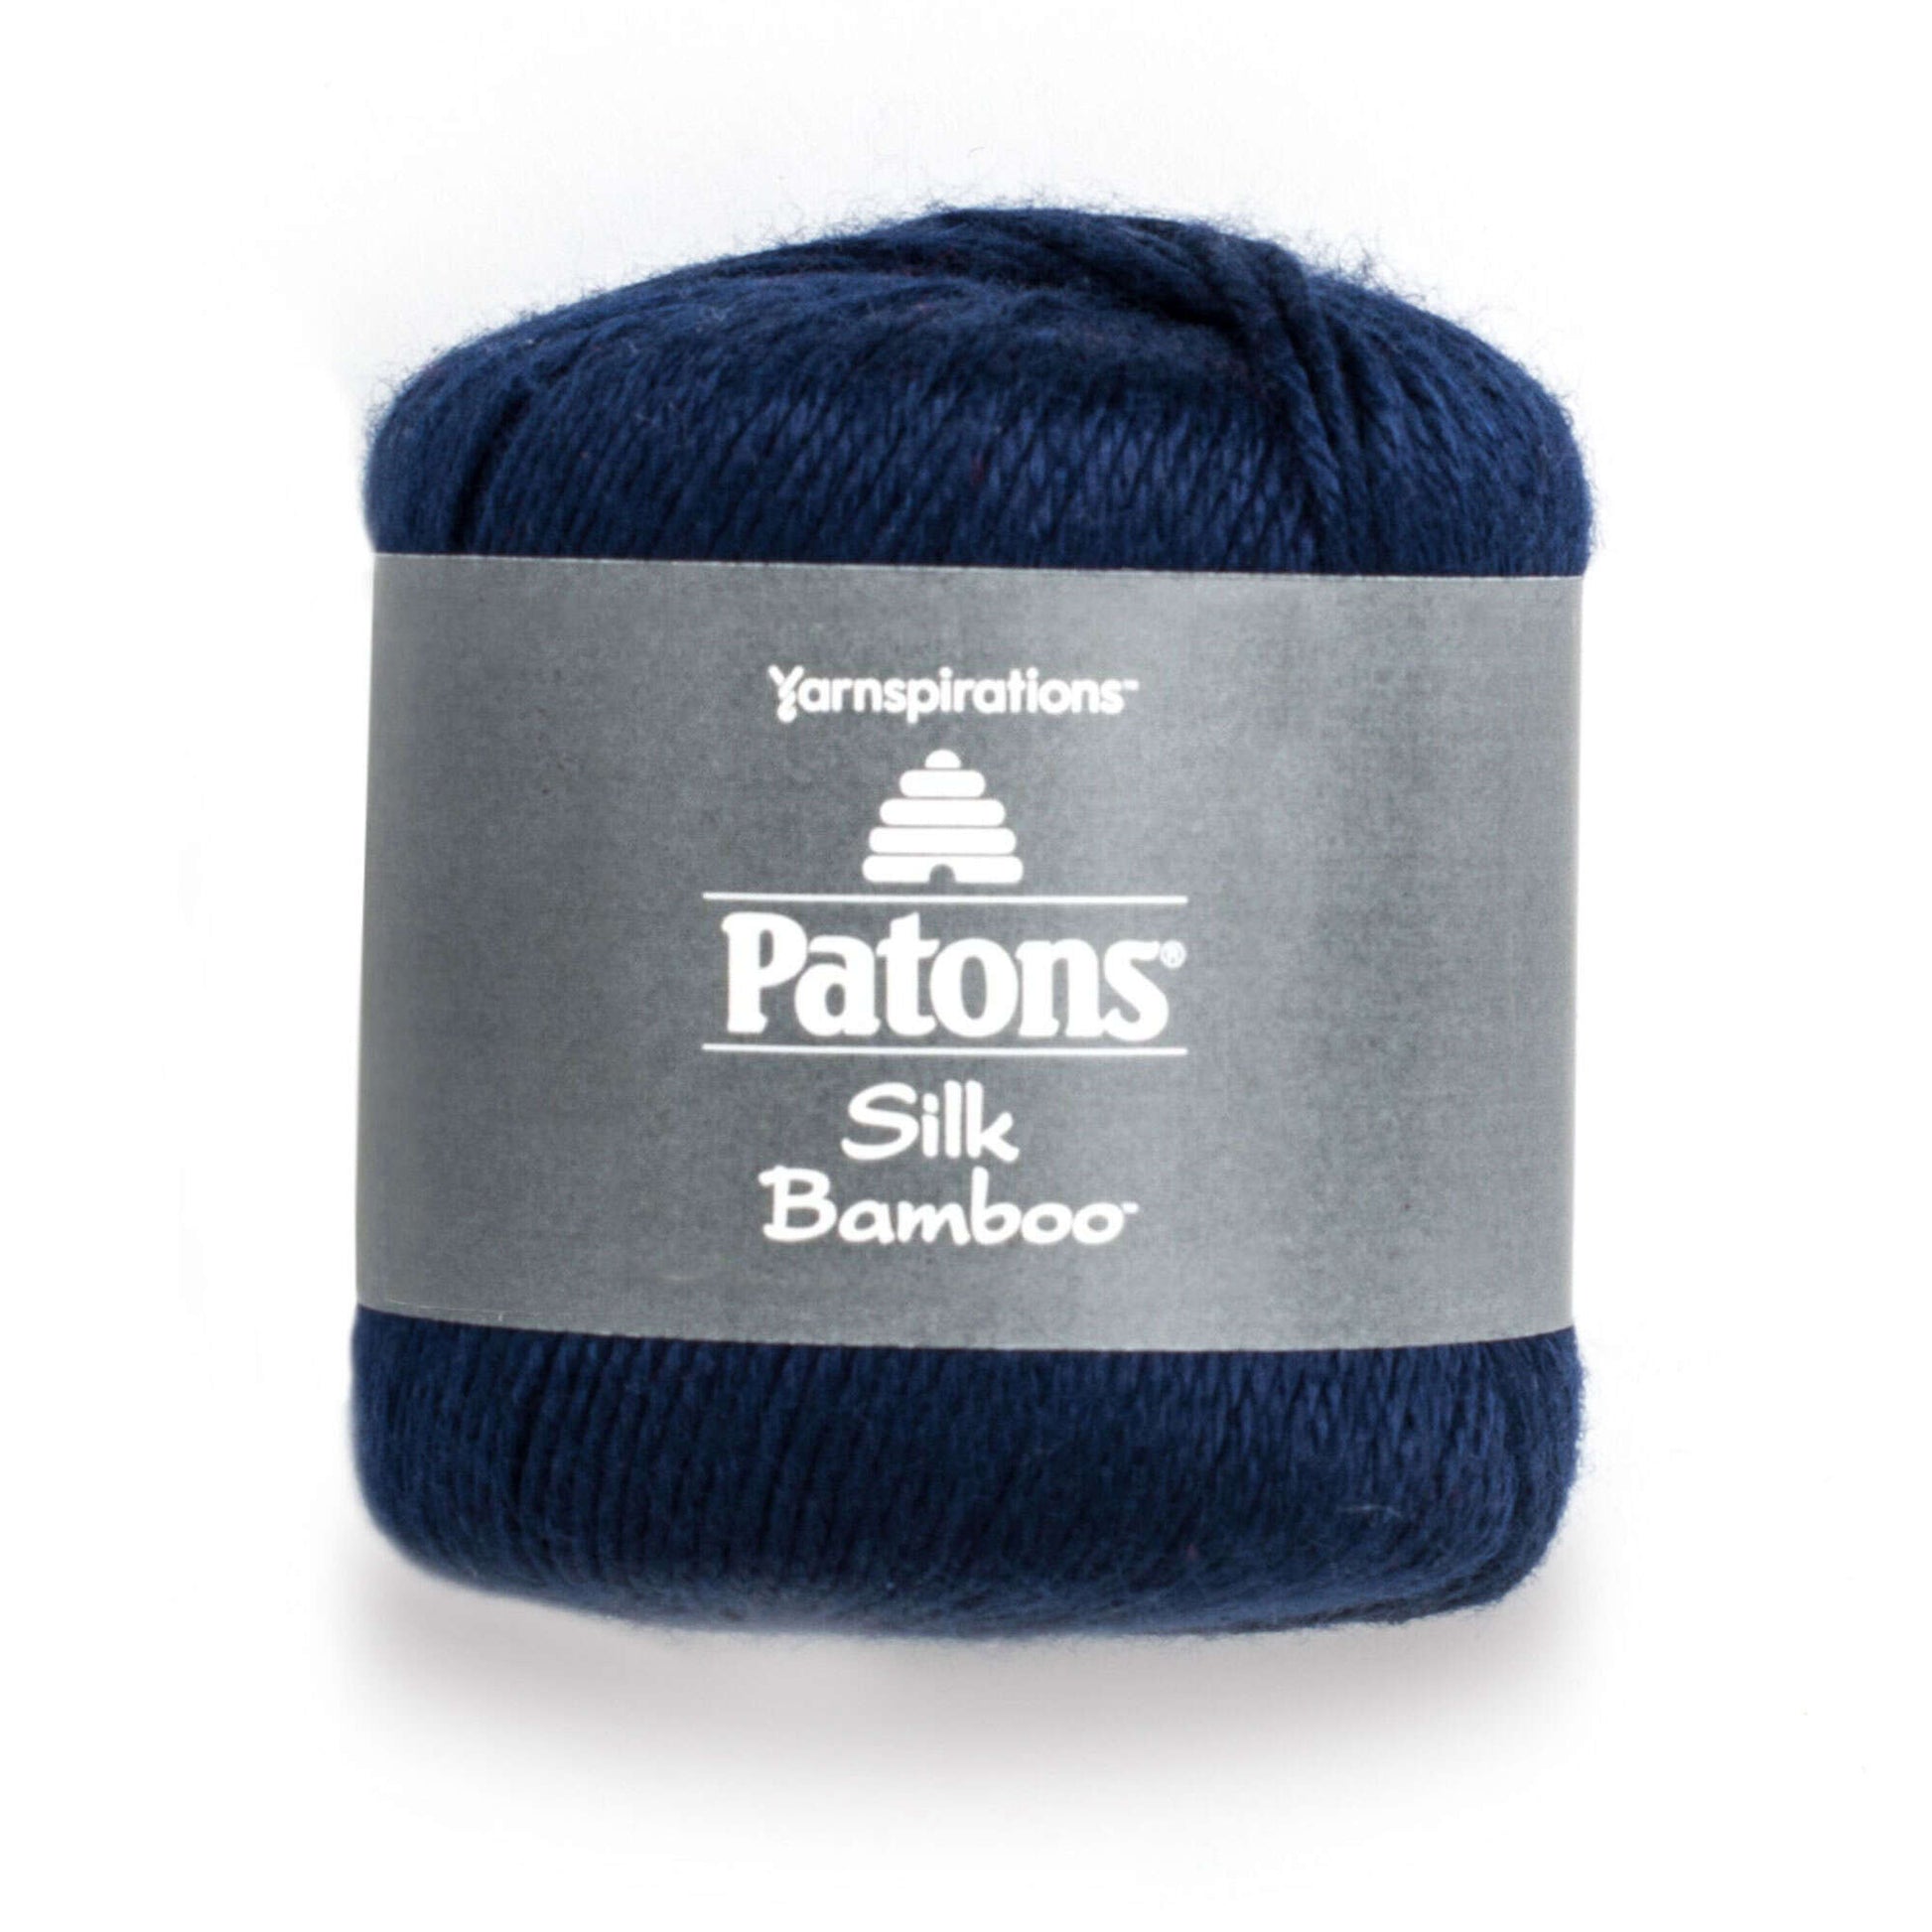 Patons Silk Bamboo Yarn - Discontinued Shades Navy